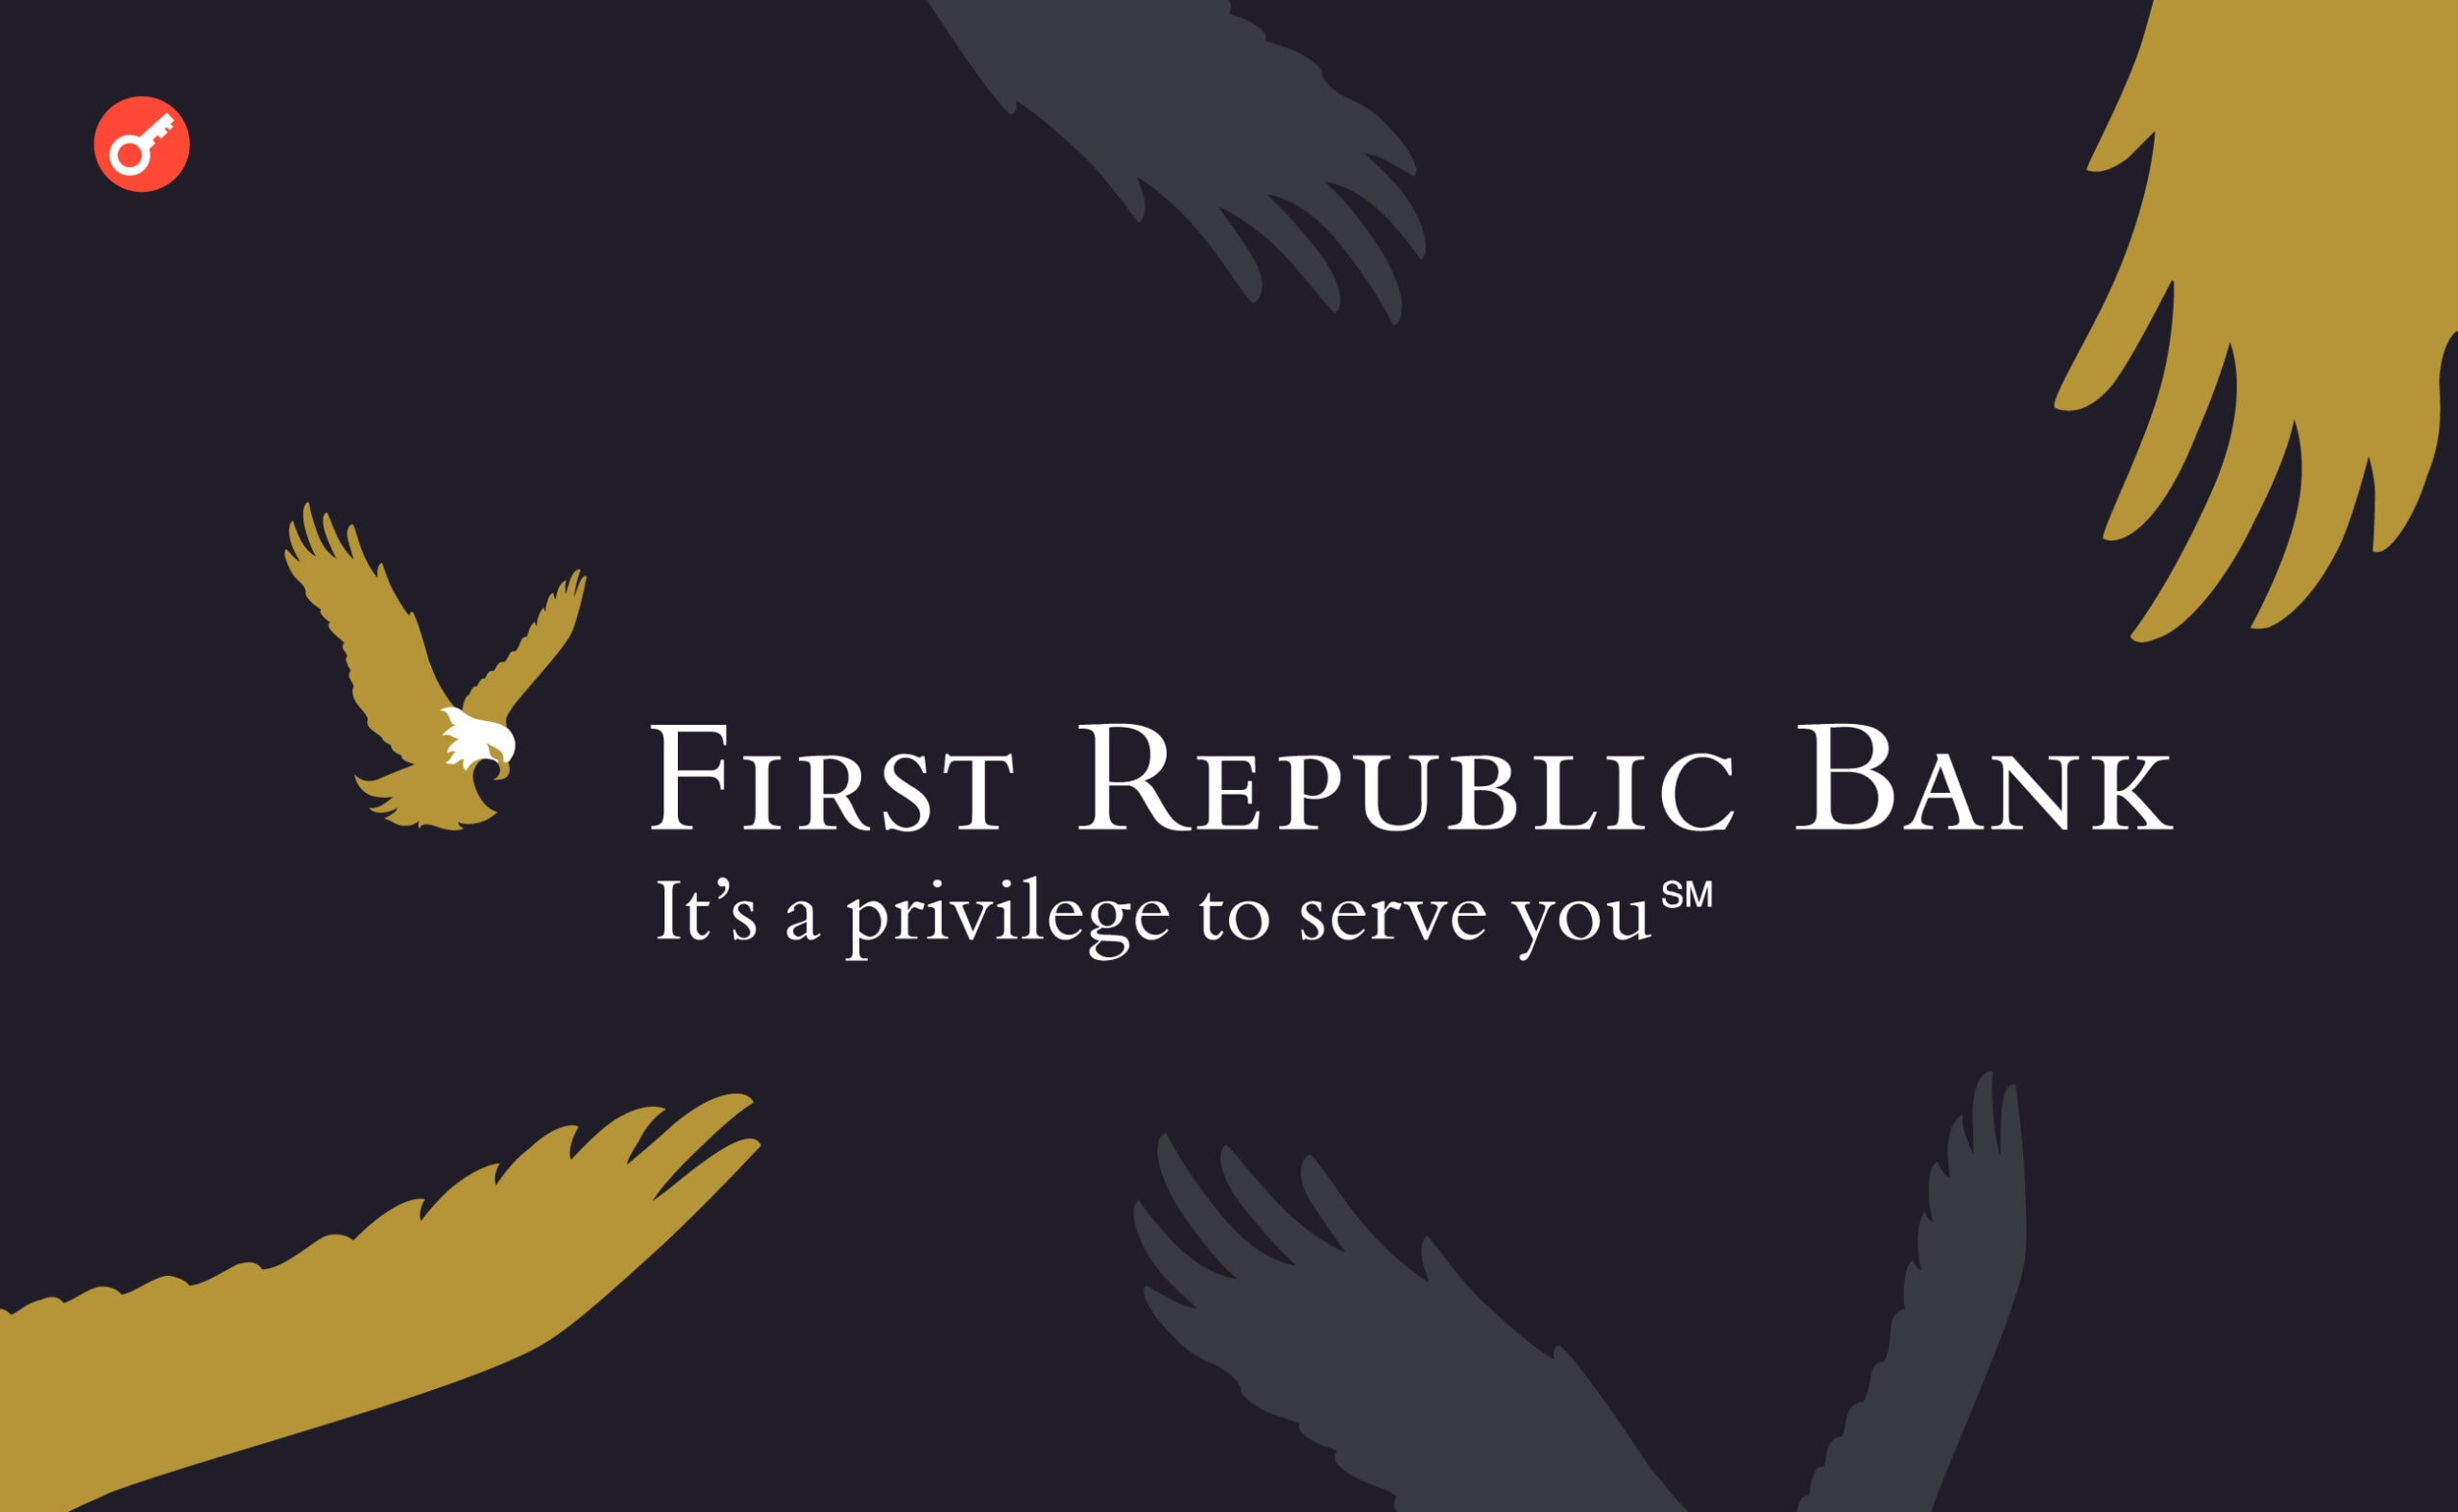 First Republic Bank грозит конфискация из-за финансовых трудностей. Заглавный коллаж новости.